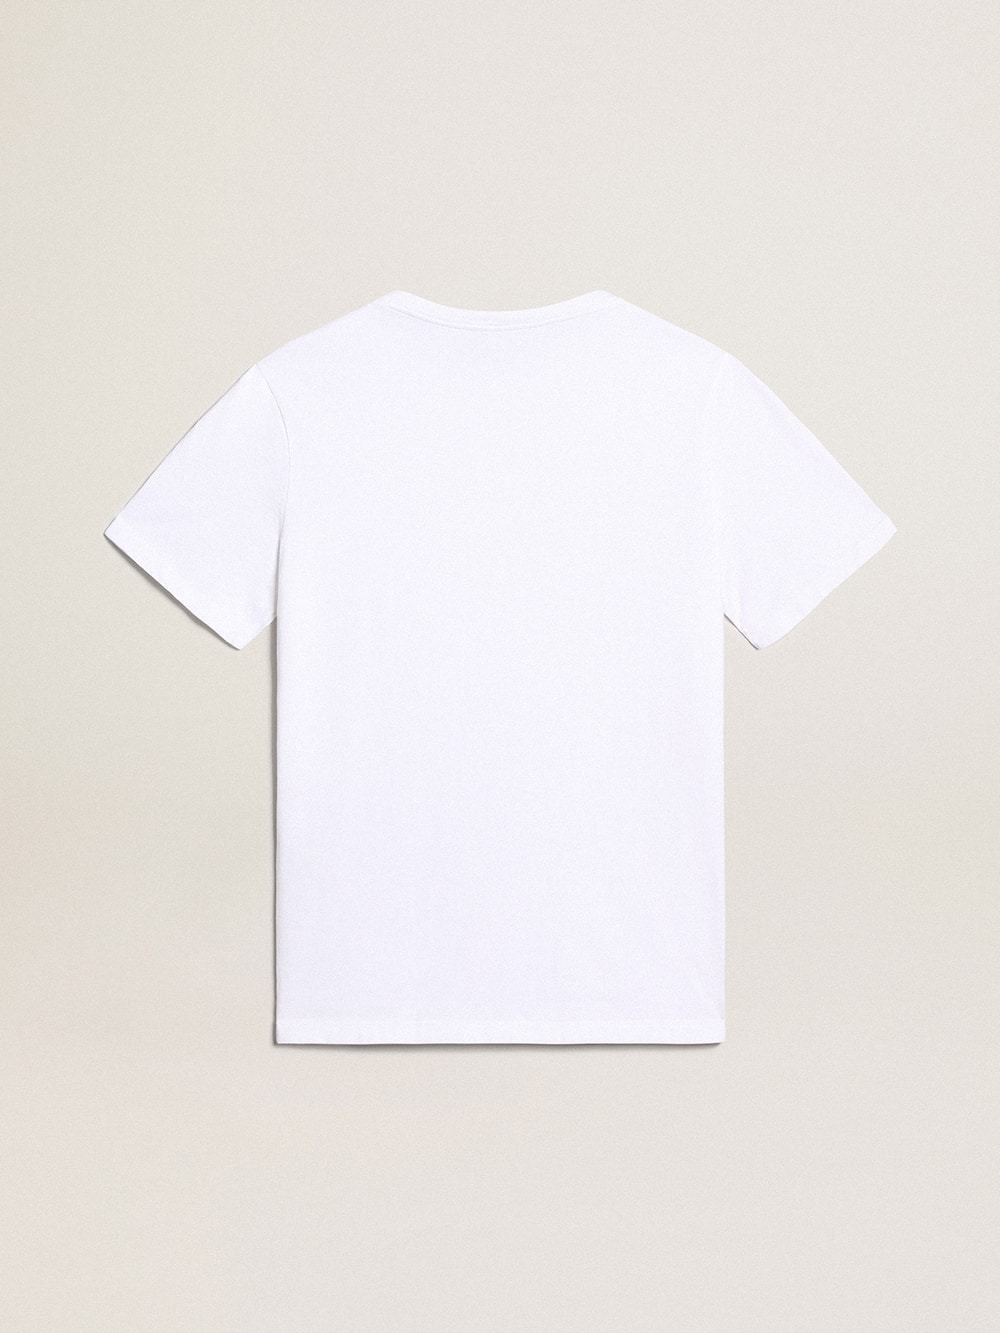 Golden Goose - T-shirt blanc avec logo noir contrasté sur le devant in 